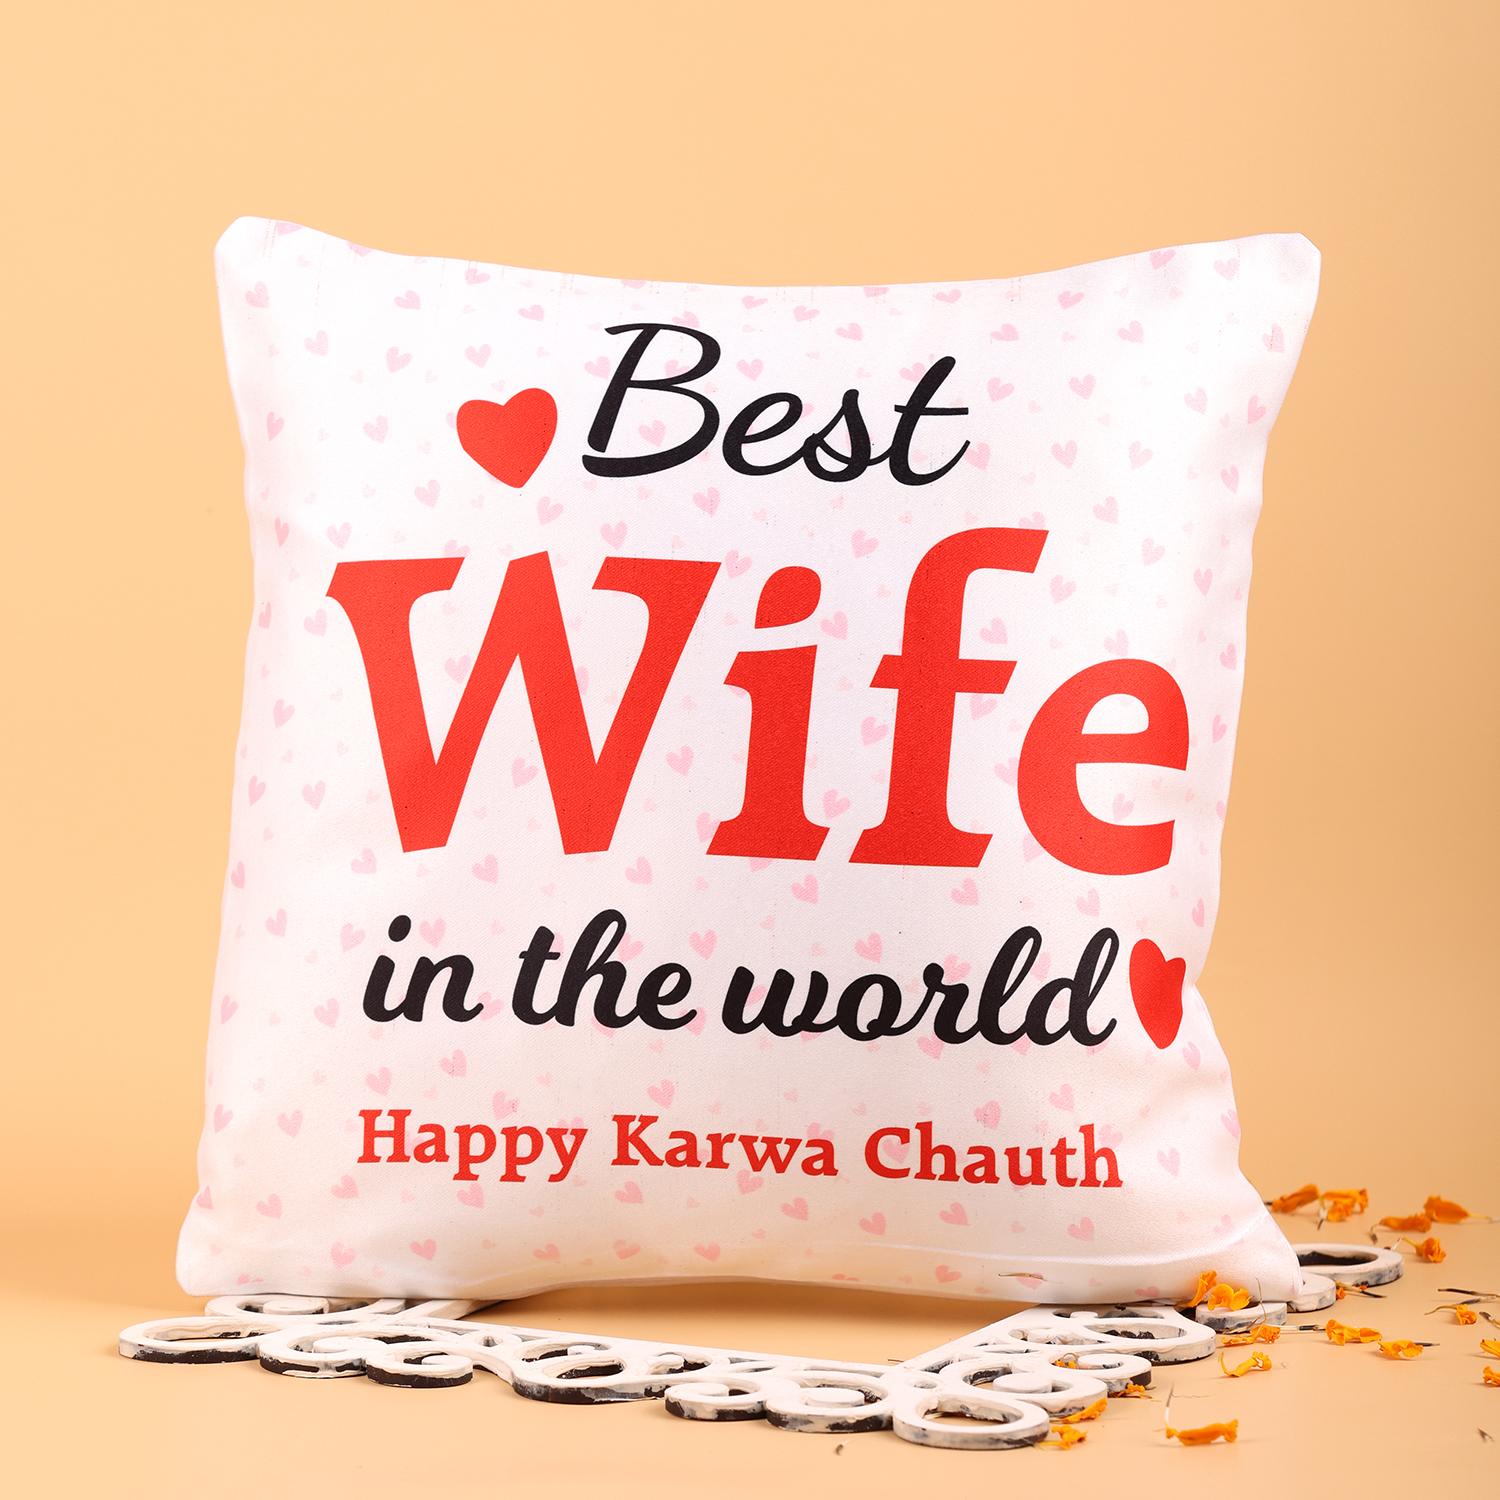 Buy THE HATKE STORE Karwa Chauth Photo Mug,Best Gift for Karwa Chauth, (330  ML, White Ceramic Mug), Happy Karwa Chauth Mug, KarwaChauth Photo  Mug,Personalised Mug,P15 Online at Low Prices in India -